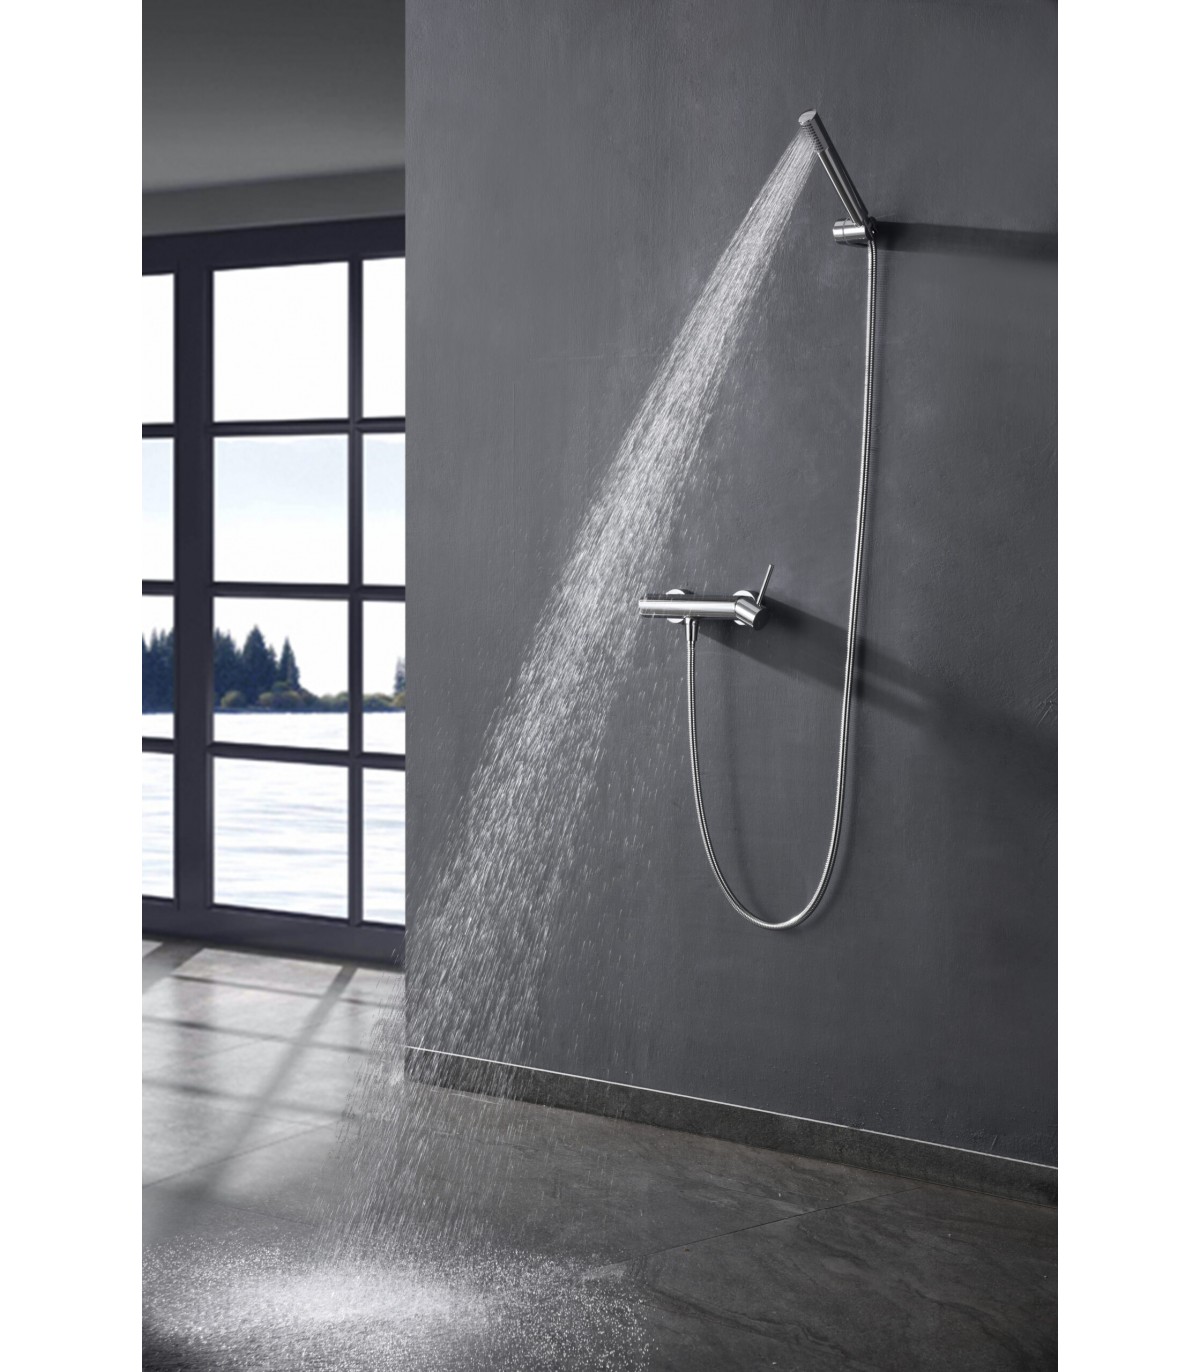 Conjunto de ducha monomando MONZA de IMEX al mejor precio garantizado.